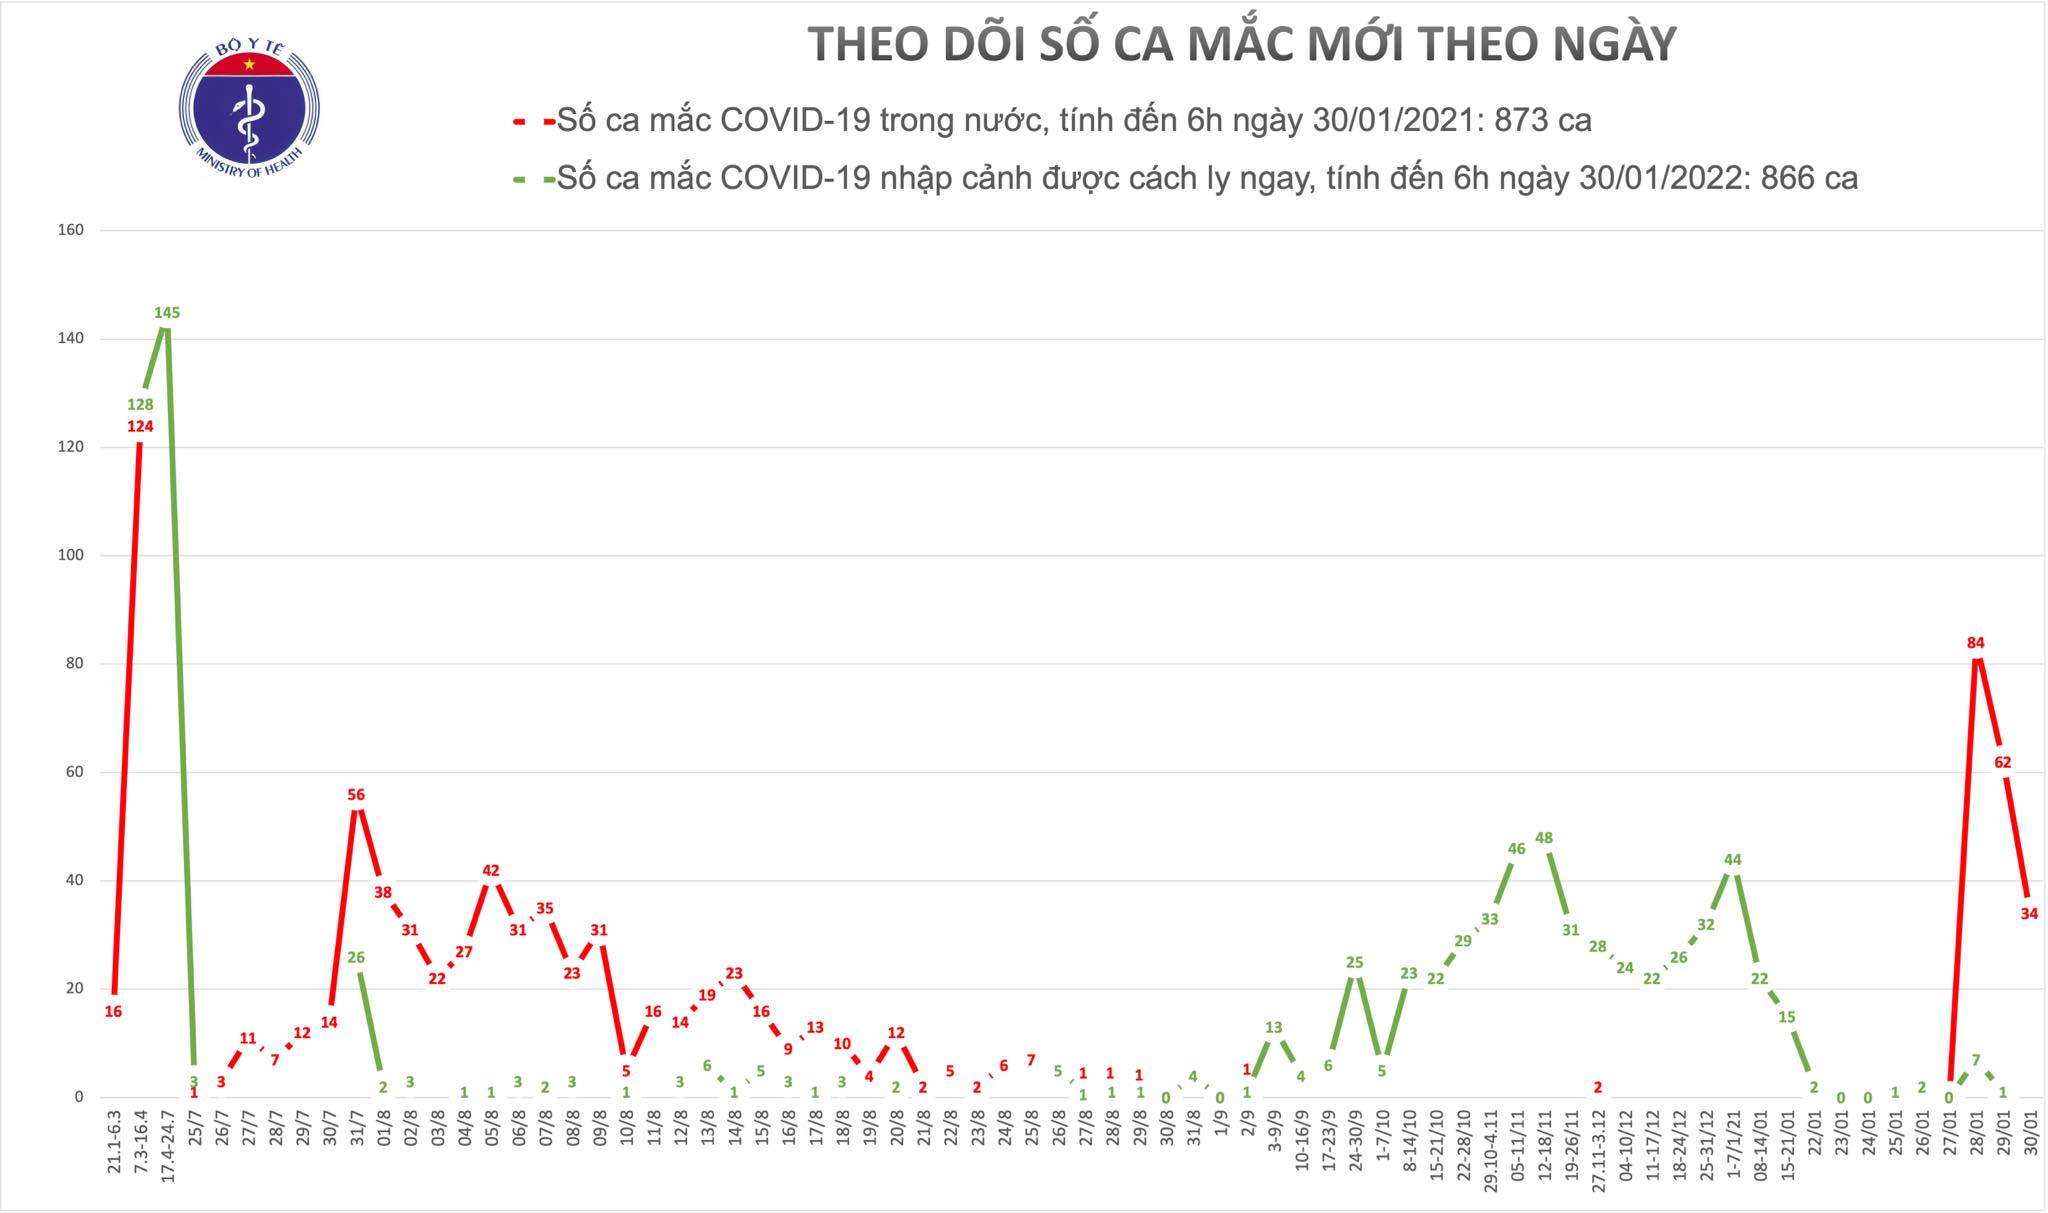 Sáng 30/1, có 34 ca mắc COVID-19 trong cộng đồng ở Hải Dương và Quảng Ninh